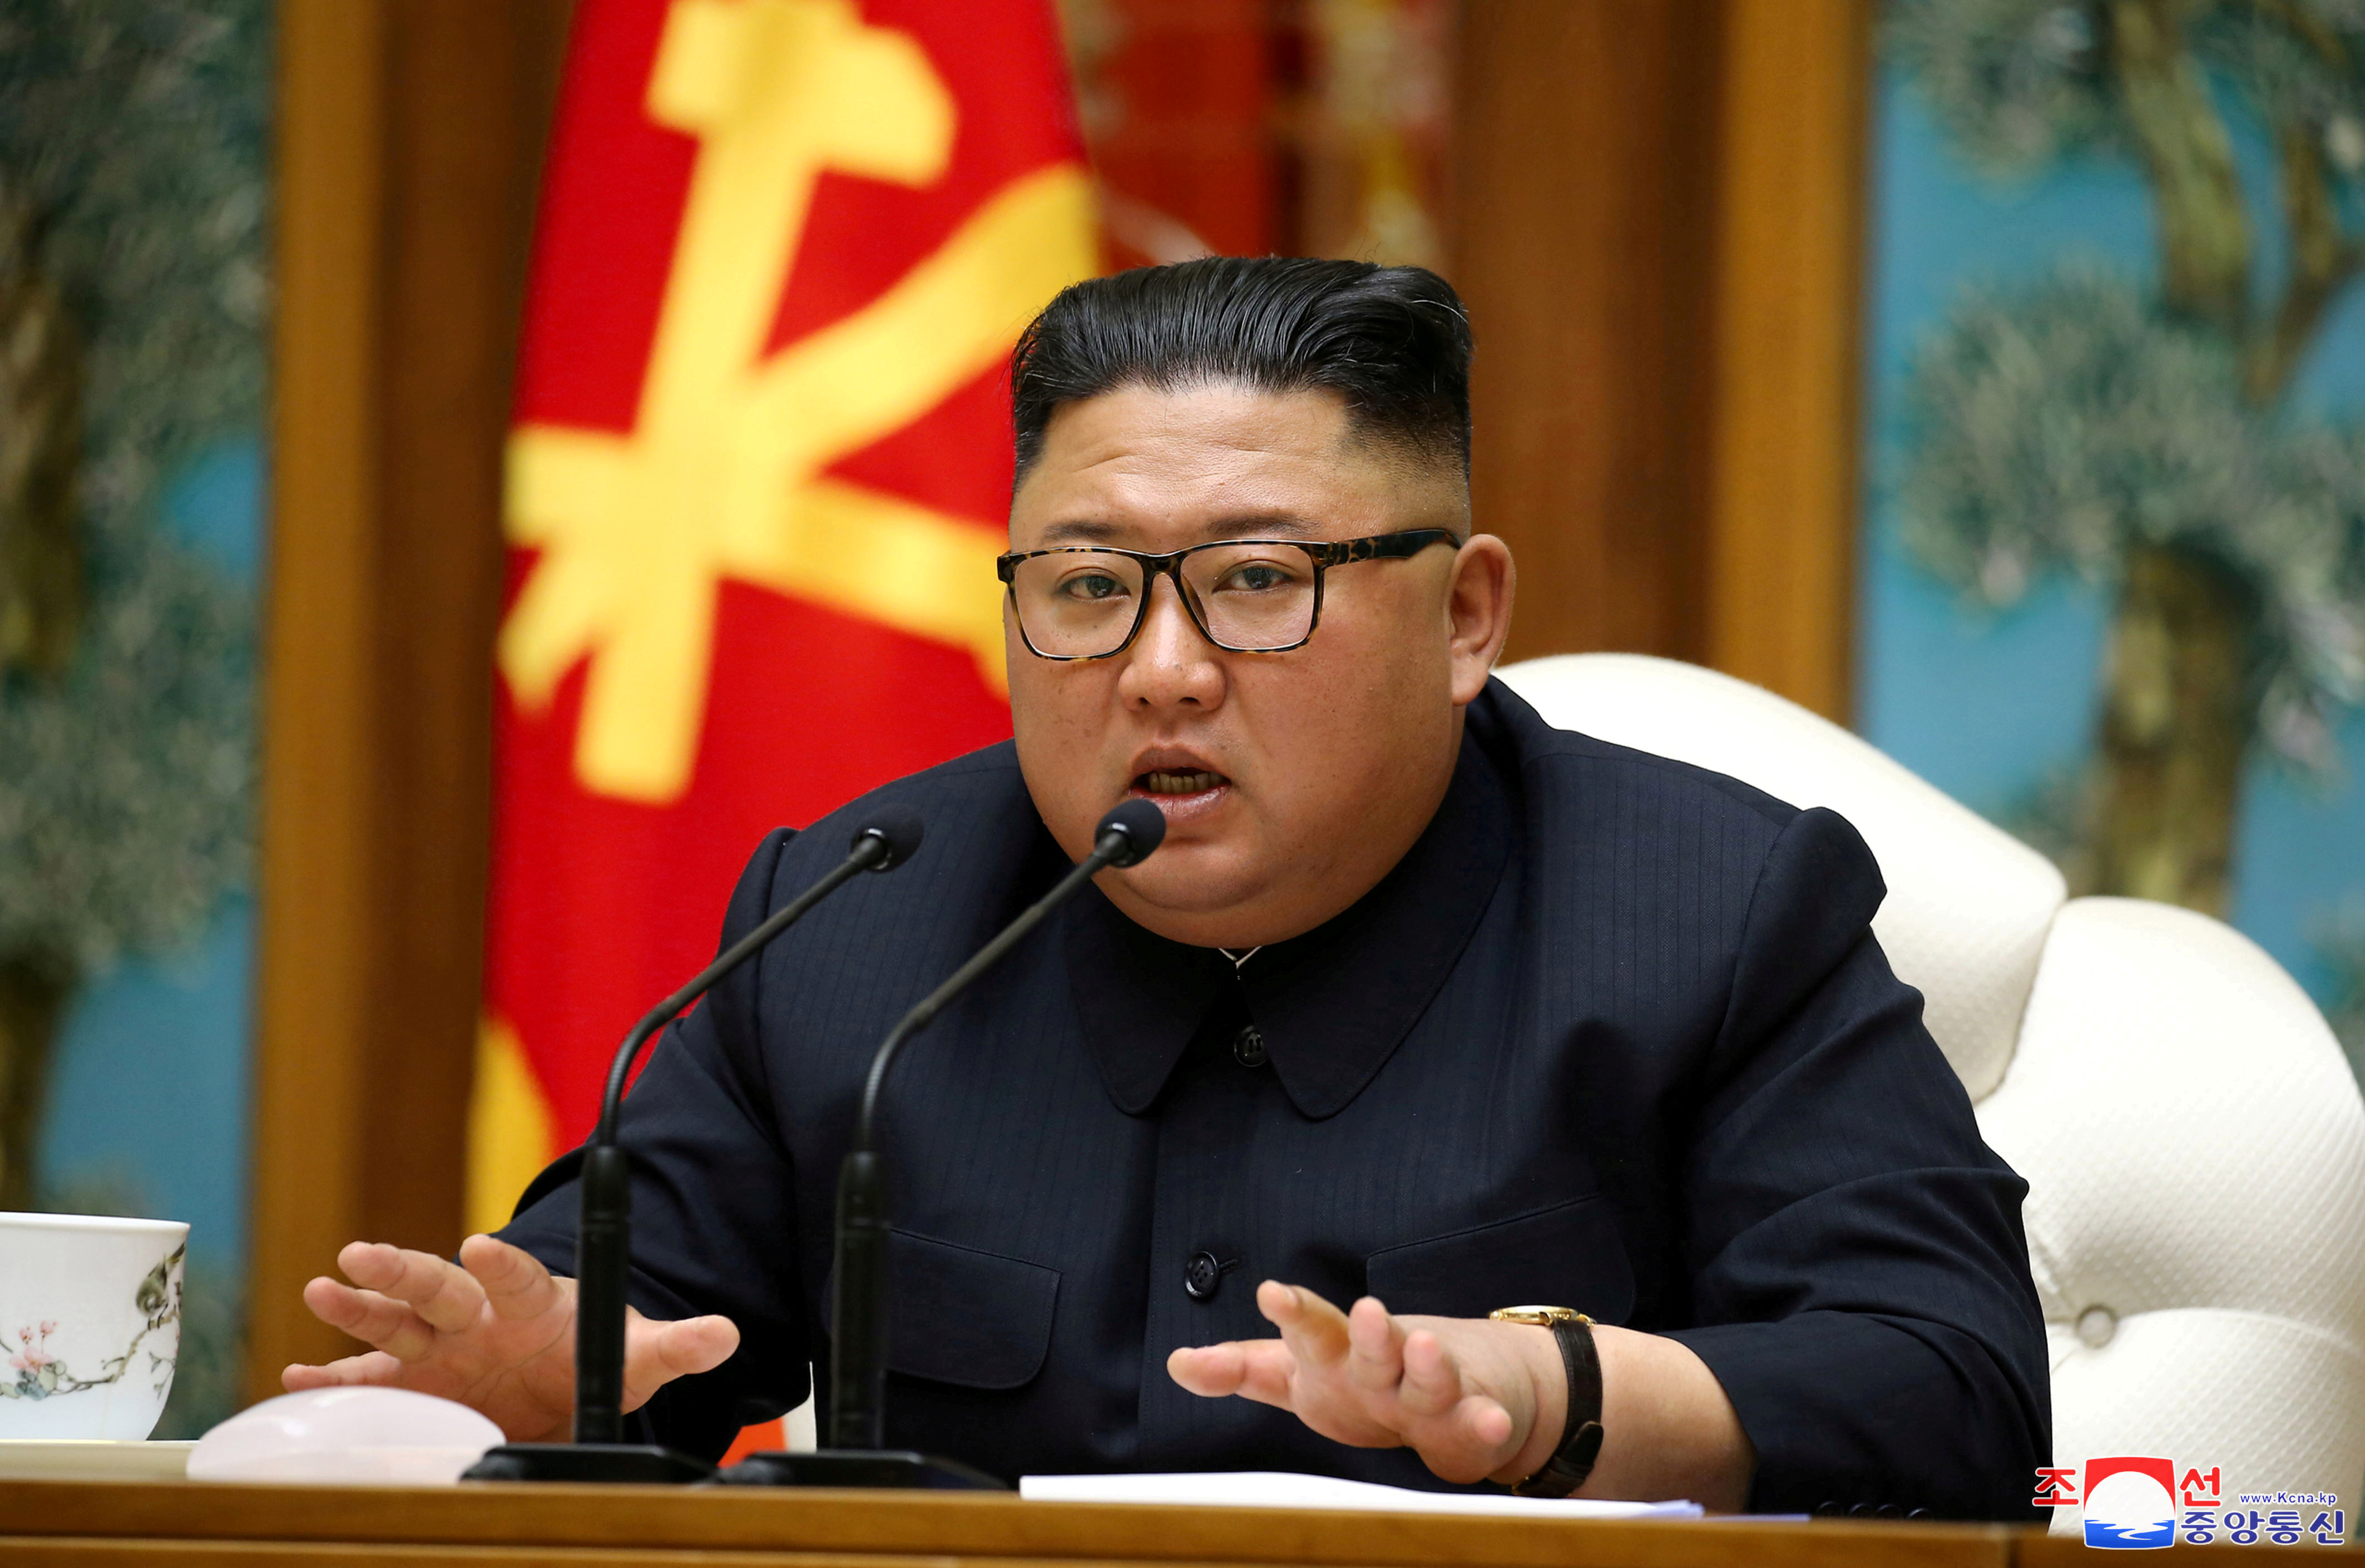 Un desertor del régimen norcoreano afirmó que Kim Jong Un murió y que su hermana tomará el poder